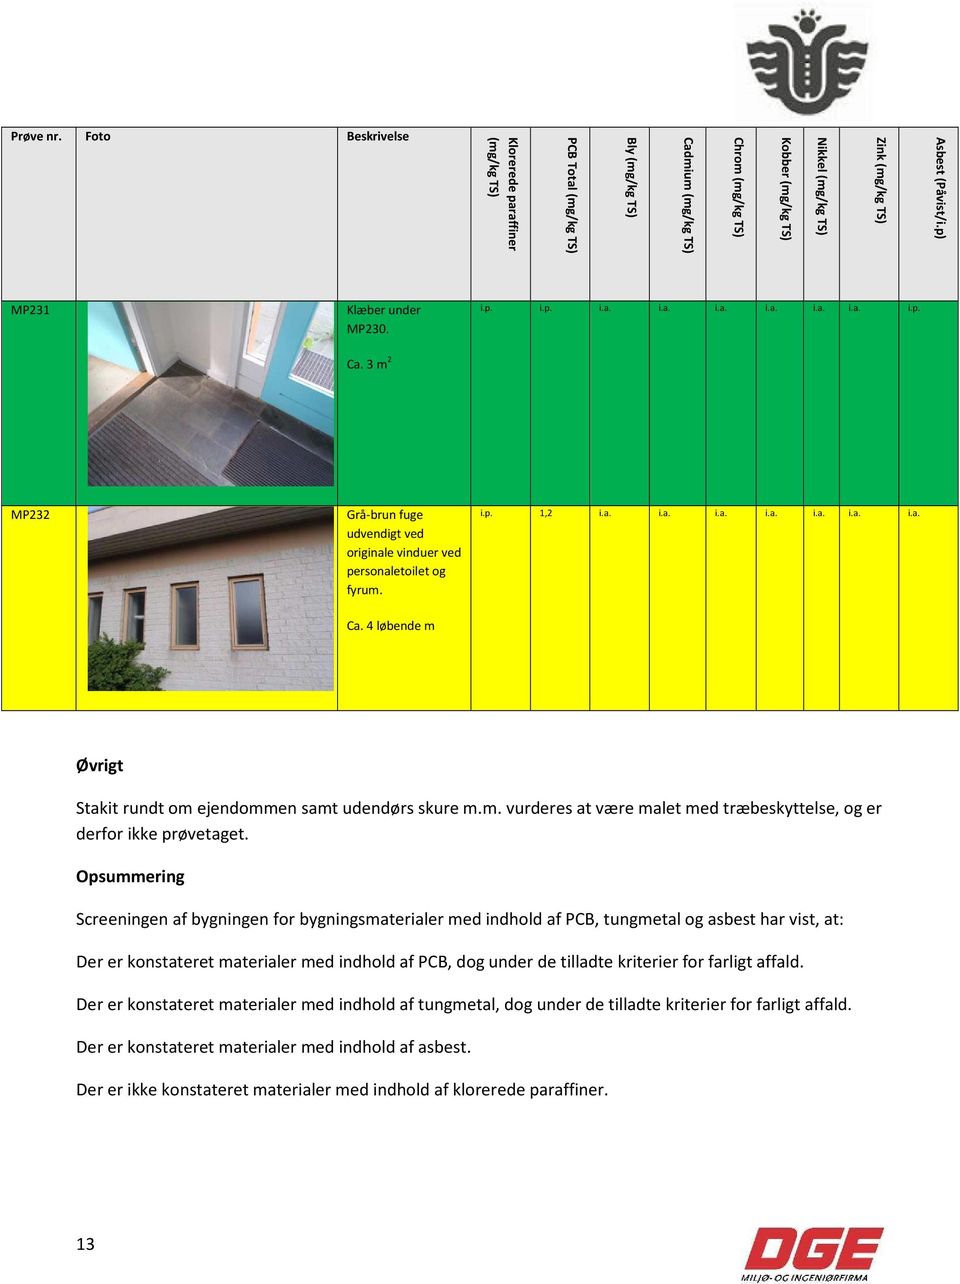 Opsummering Screeningen af bygningen for bygningsmaterialer med indhold af PCB, tungmetal og asbest har vist, at: Der er konstateret materialer med indhold af PCB, dog under de tilladte kriterier for